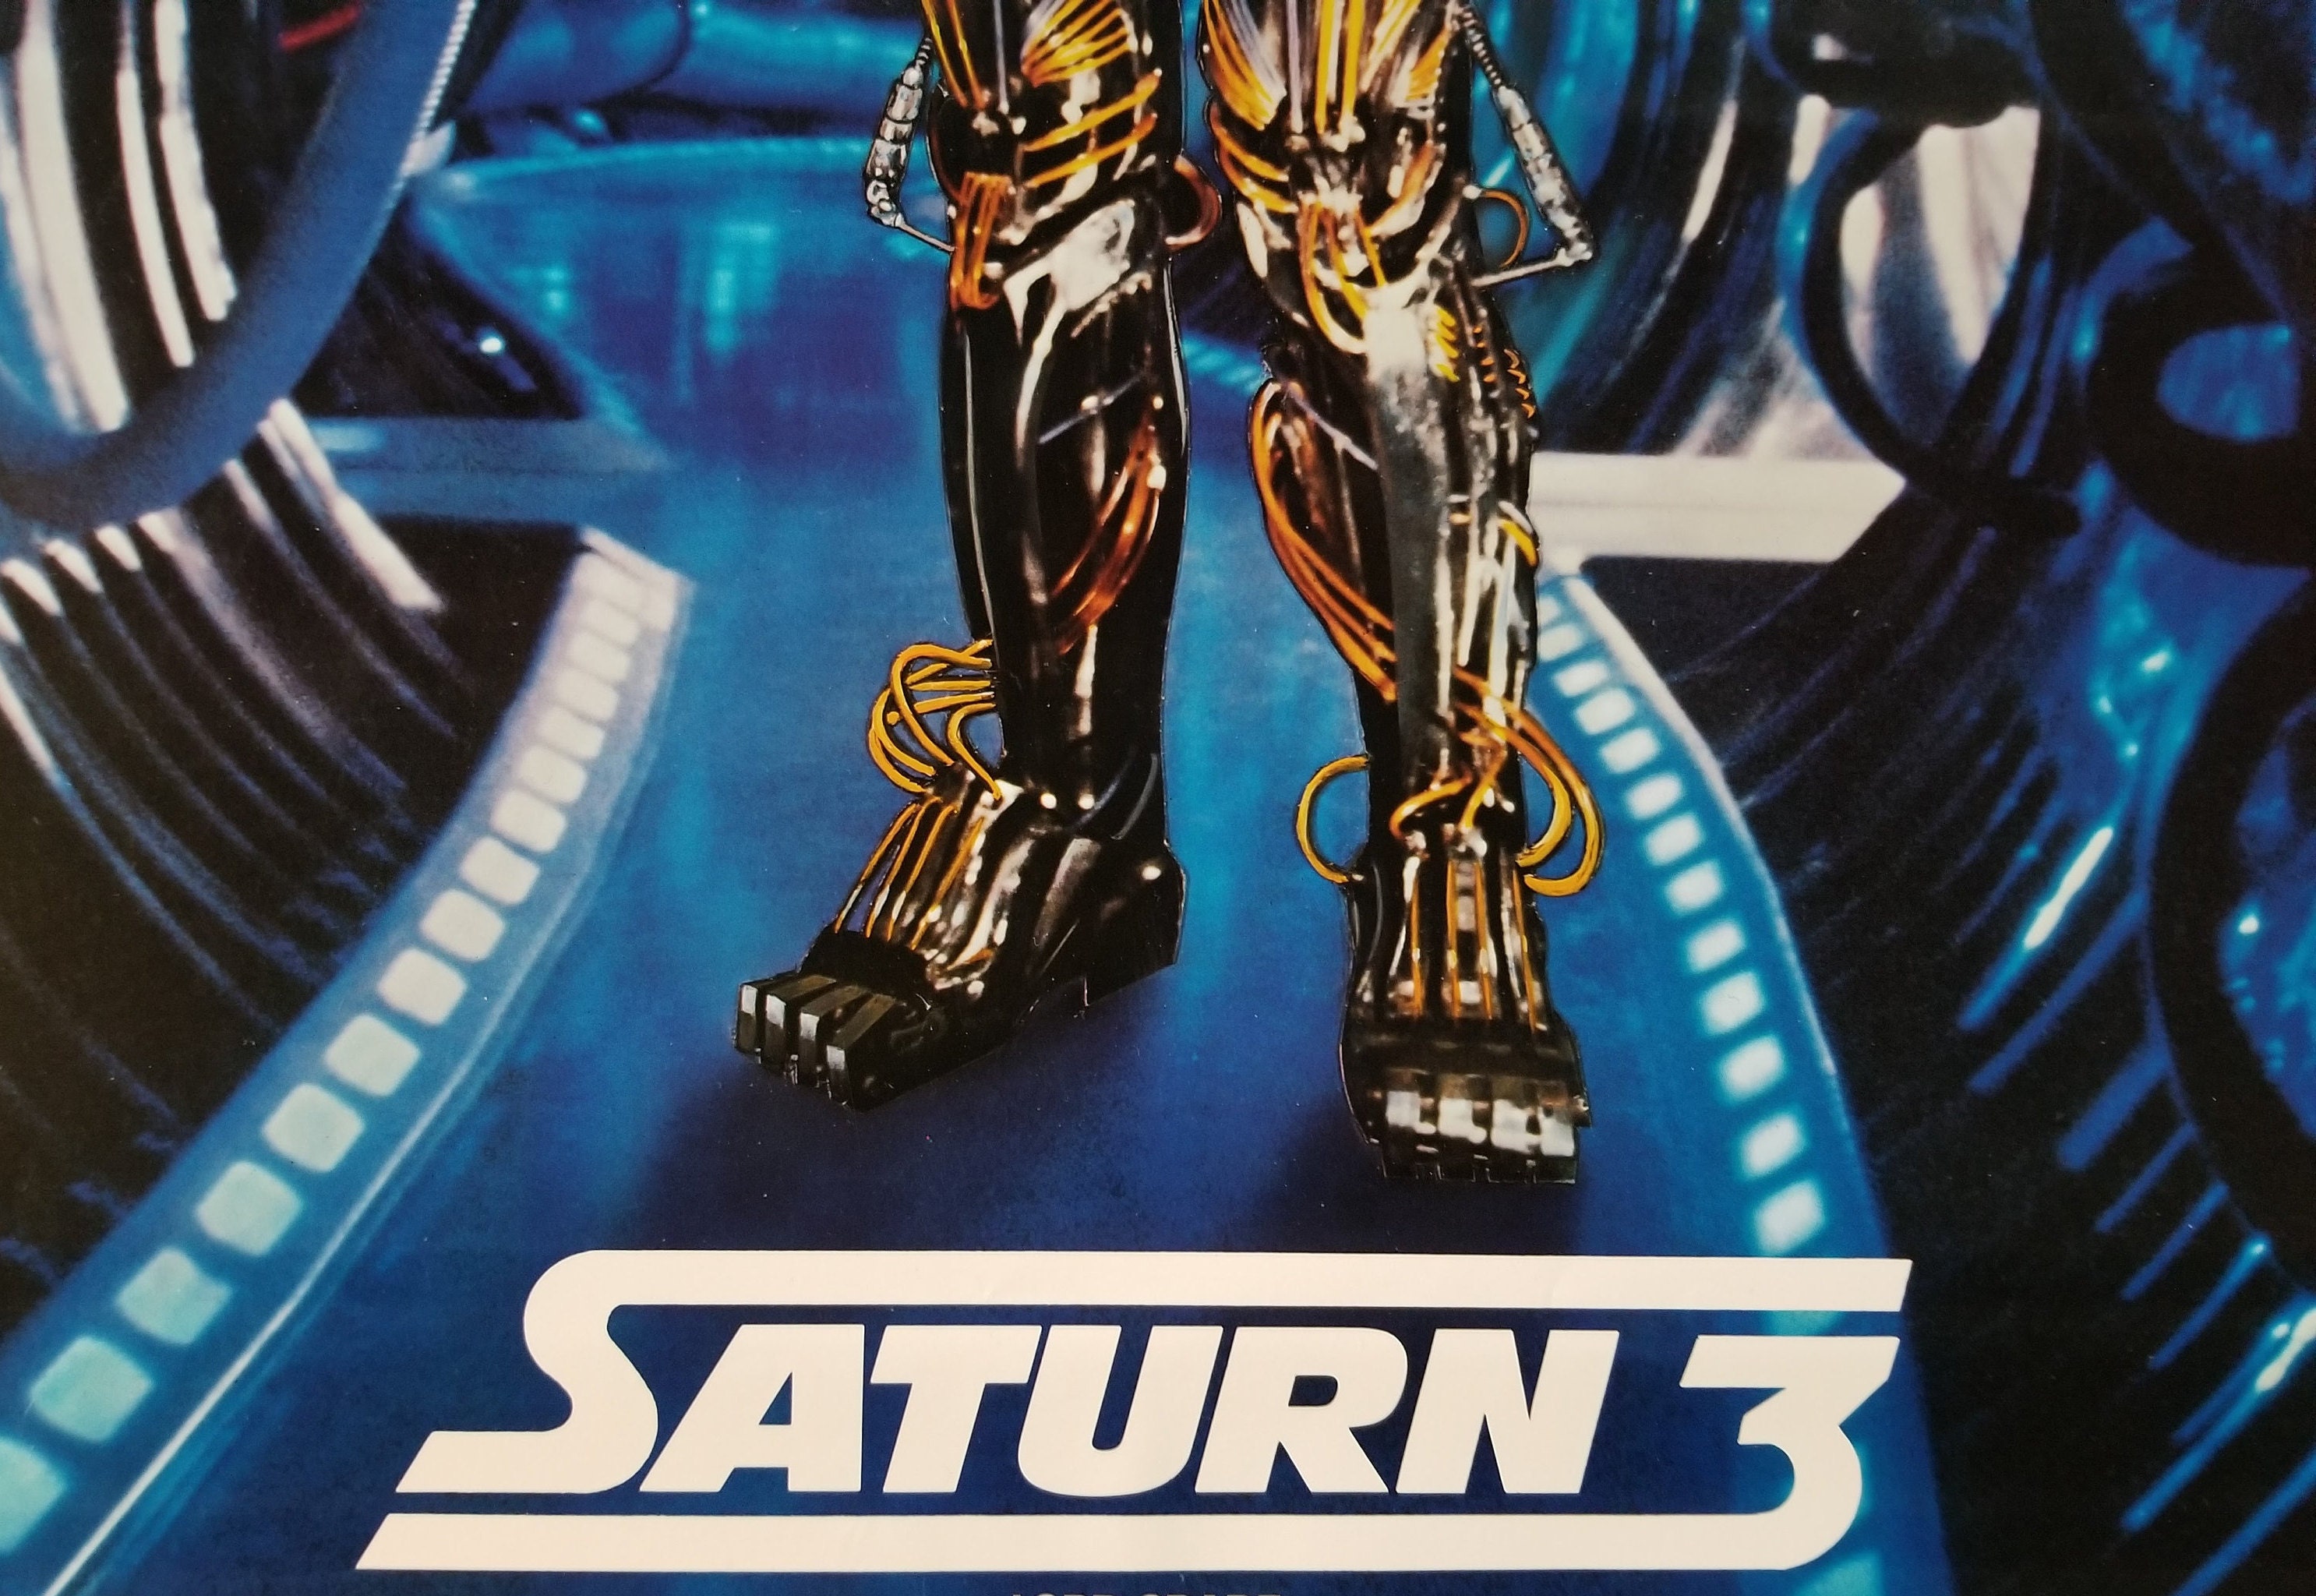 Saturn 3 (1980)